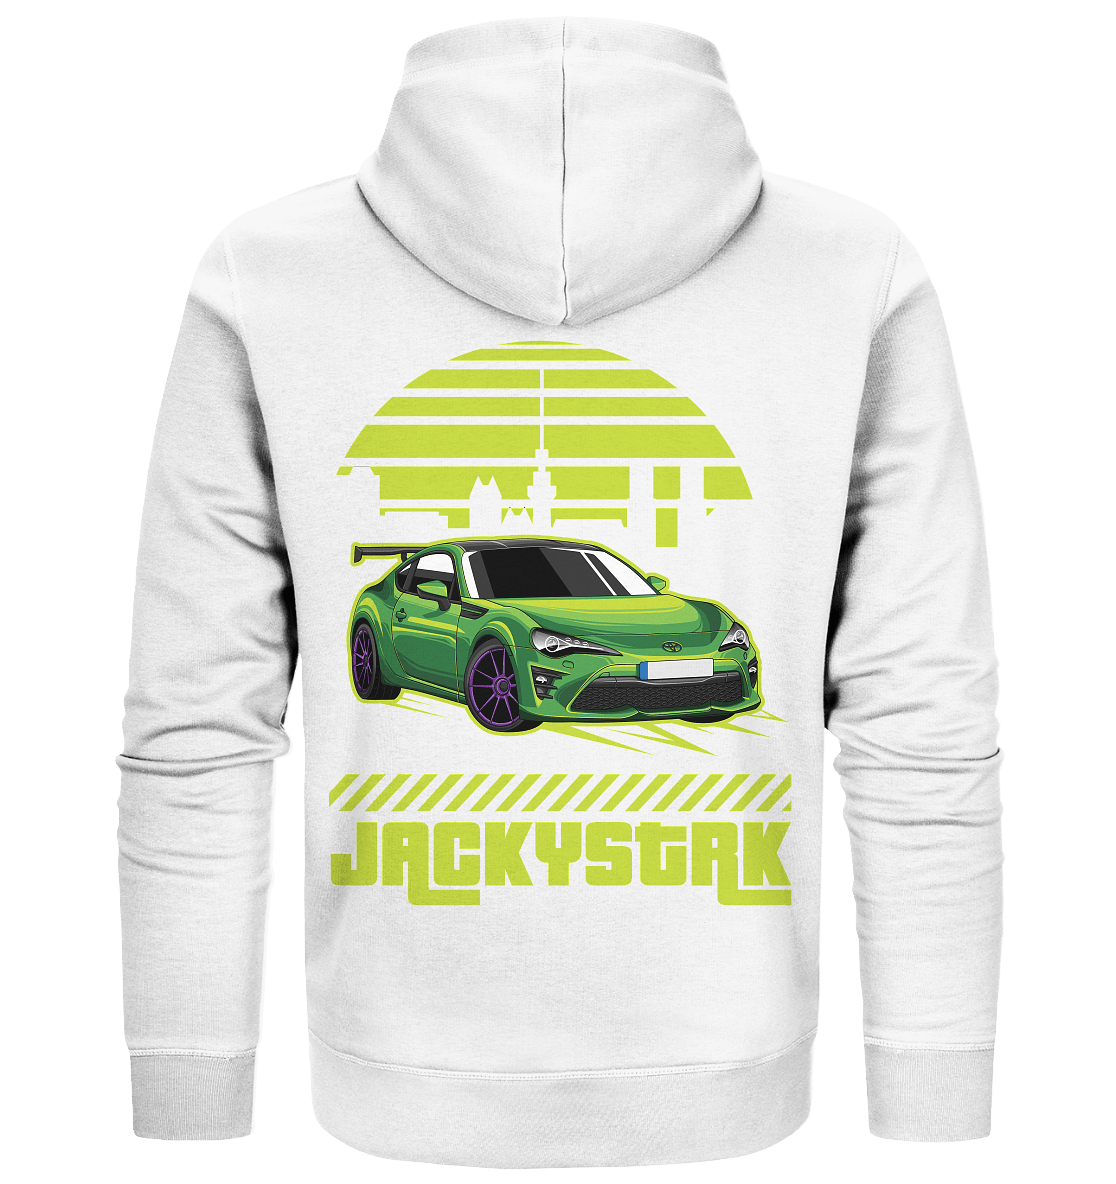 Jackys Toyota GT86 - Organic Zipper - MotoMerch.de